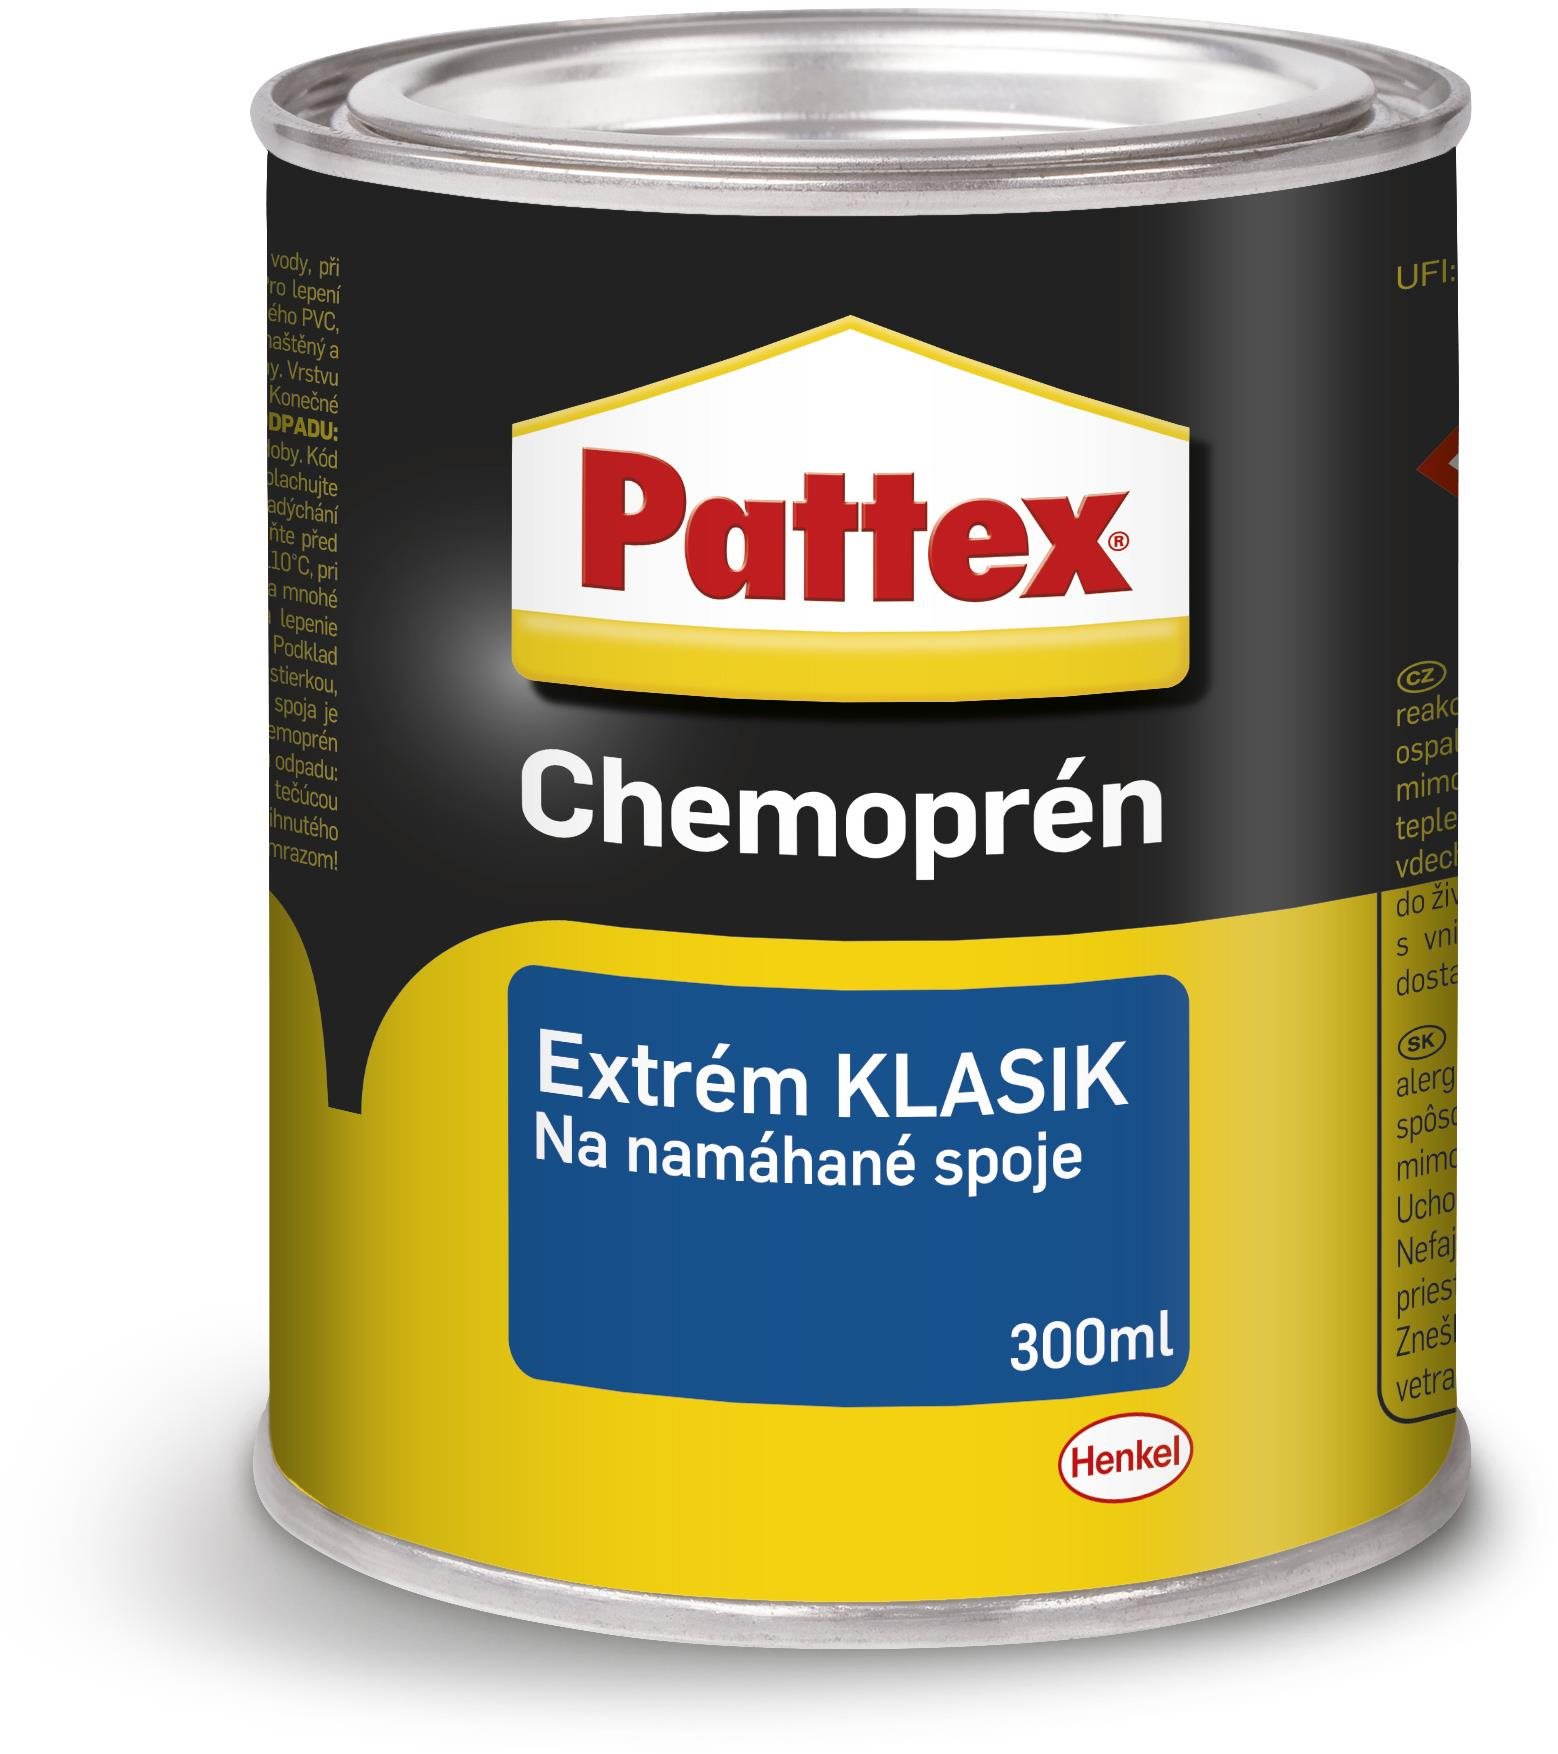 PATTEX Chemoprene Extreme CLASSIC